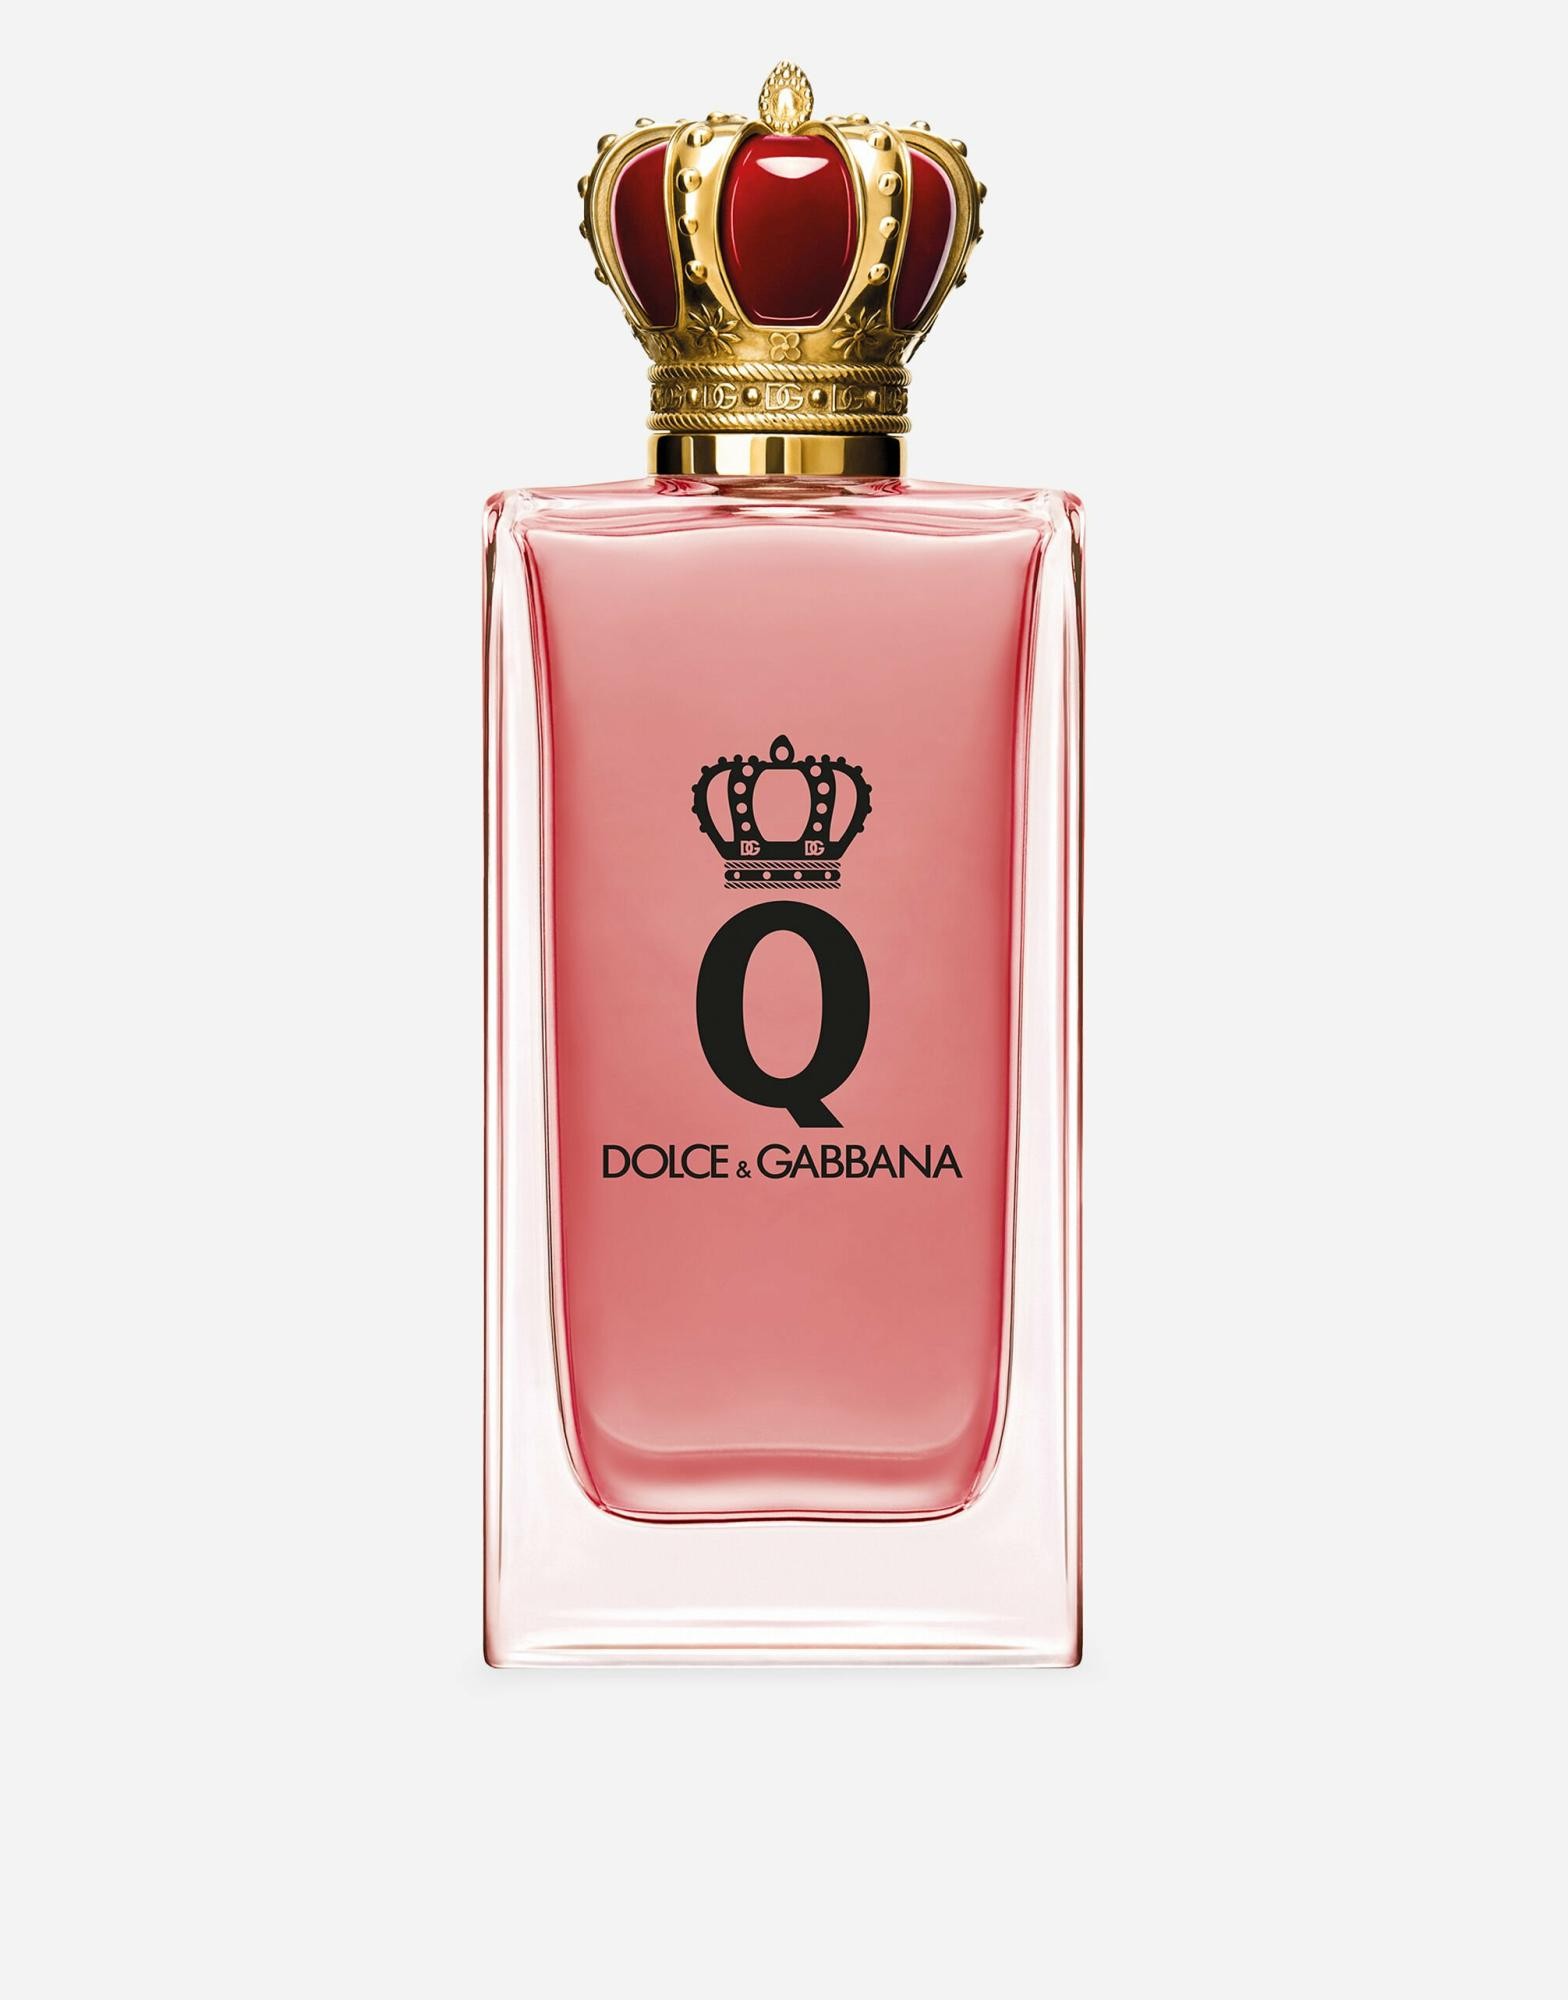 Dolce&Gabbana Q Eau De Parfum Intense 50ml